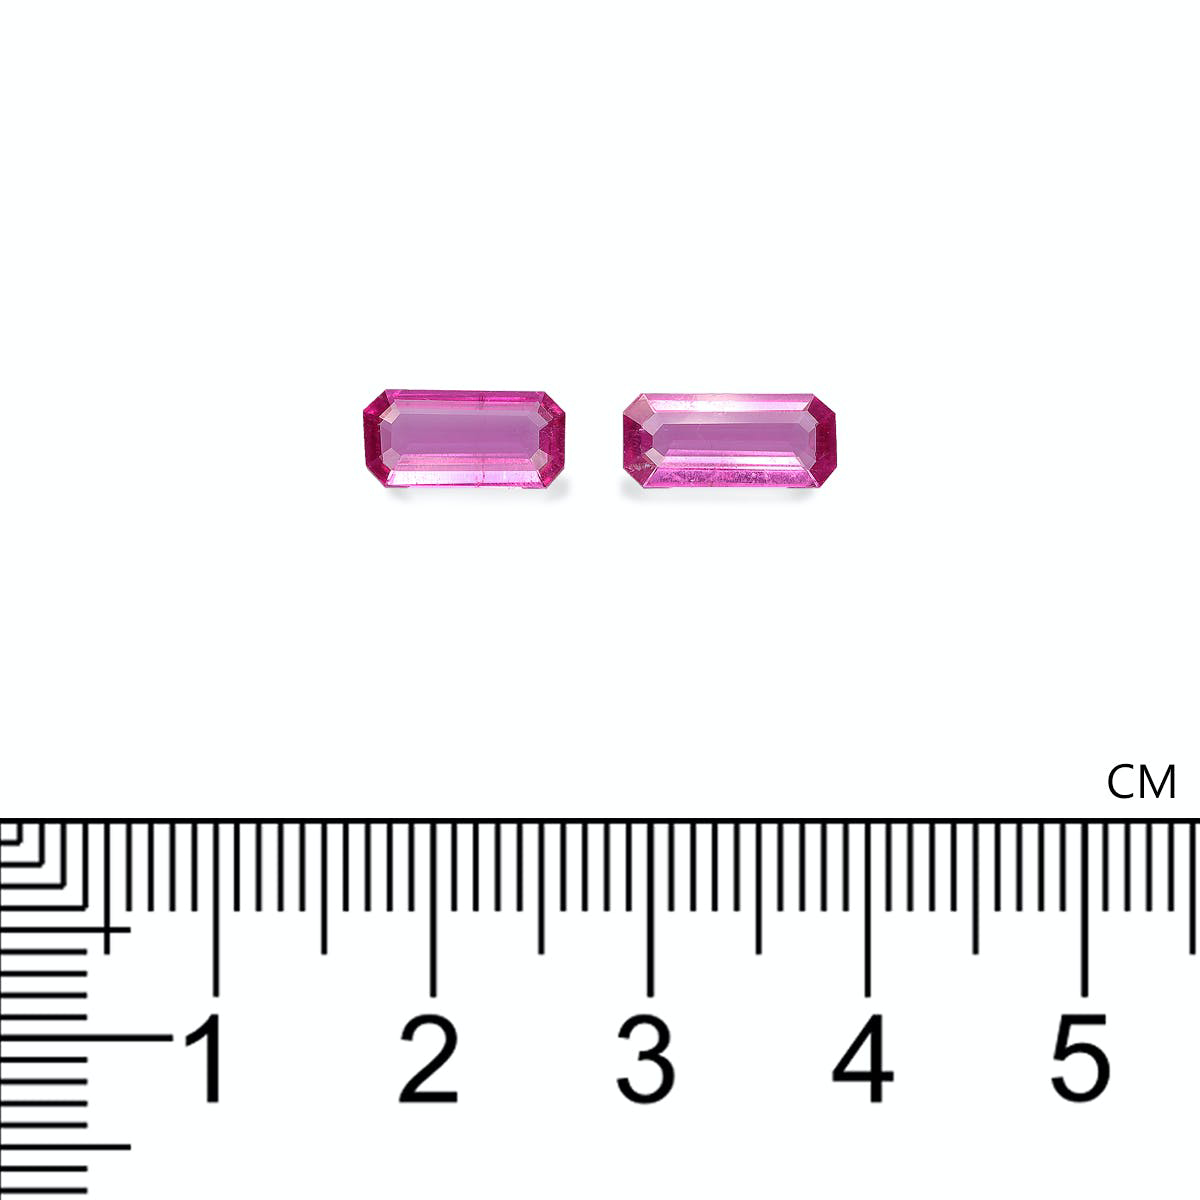 Fuscia Pink Rubellite Tourmaline 1.52ct - Pair (RL1277)